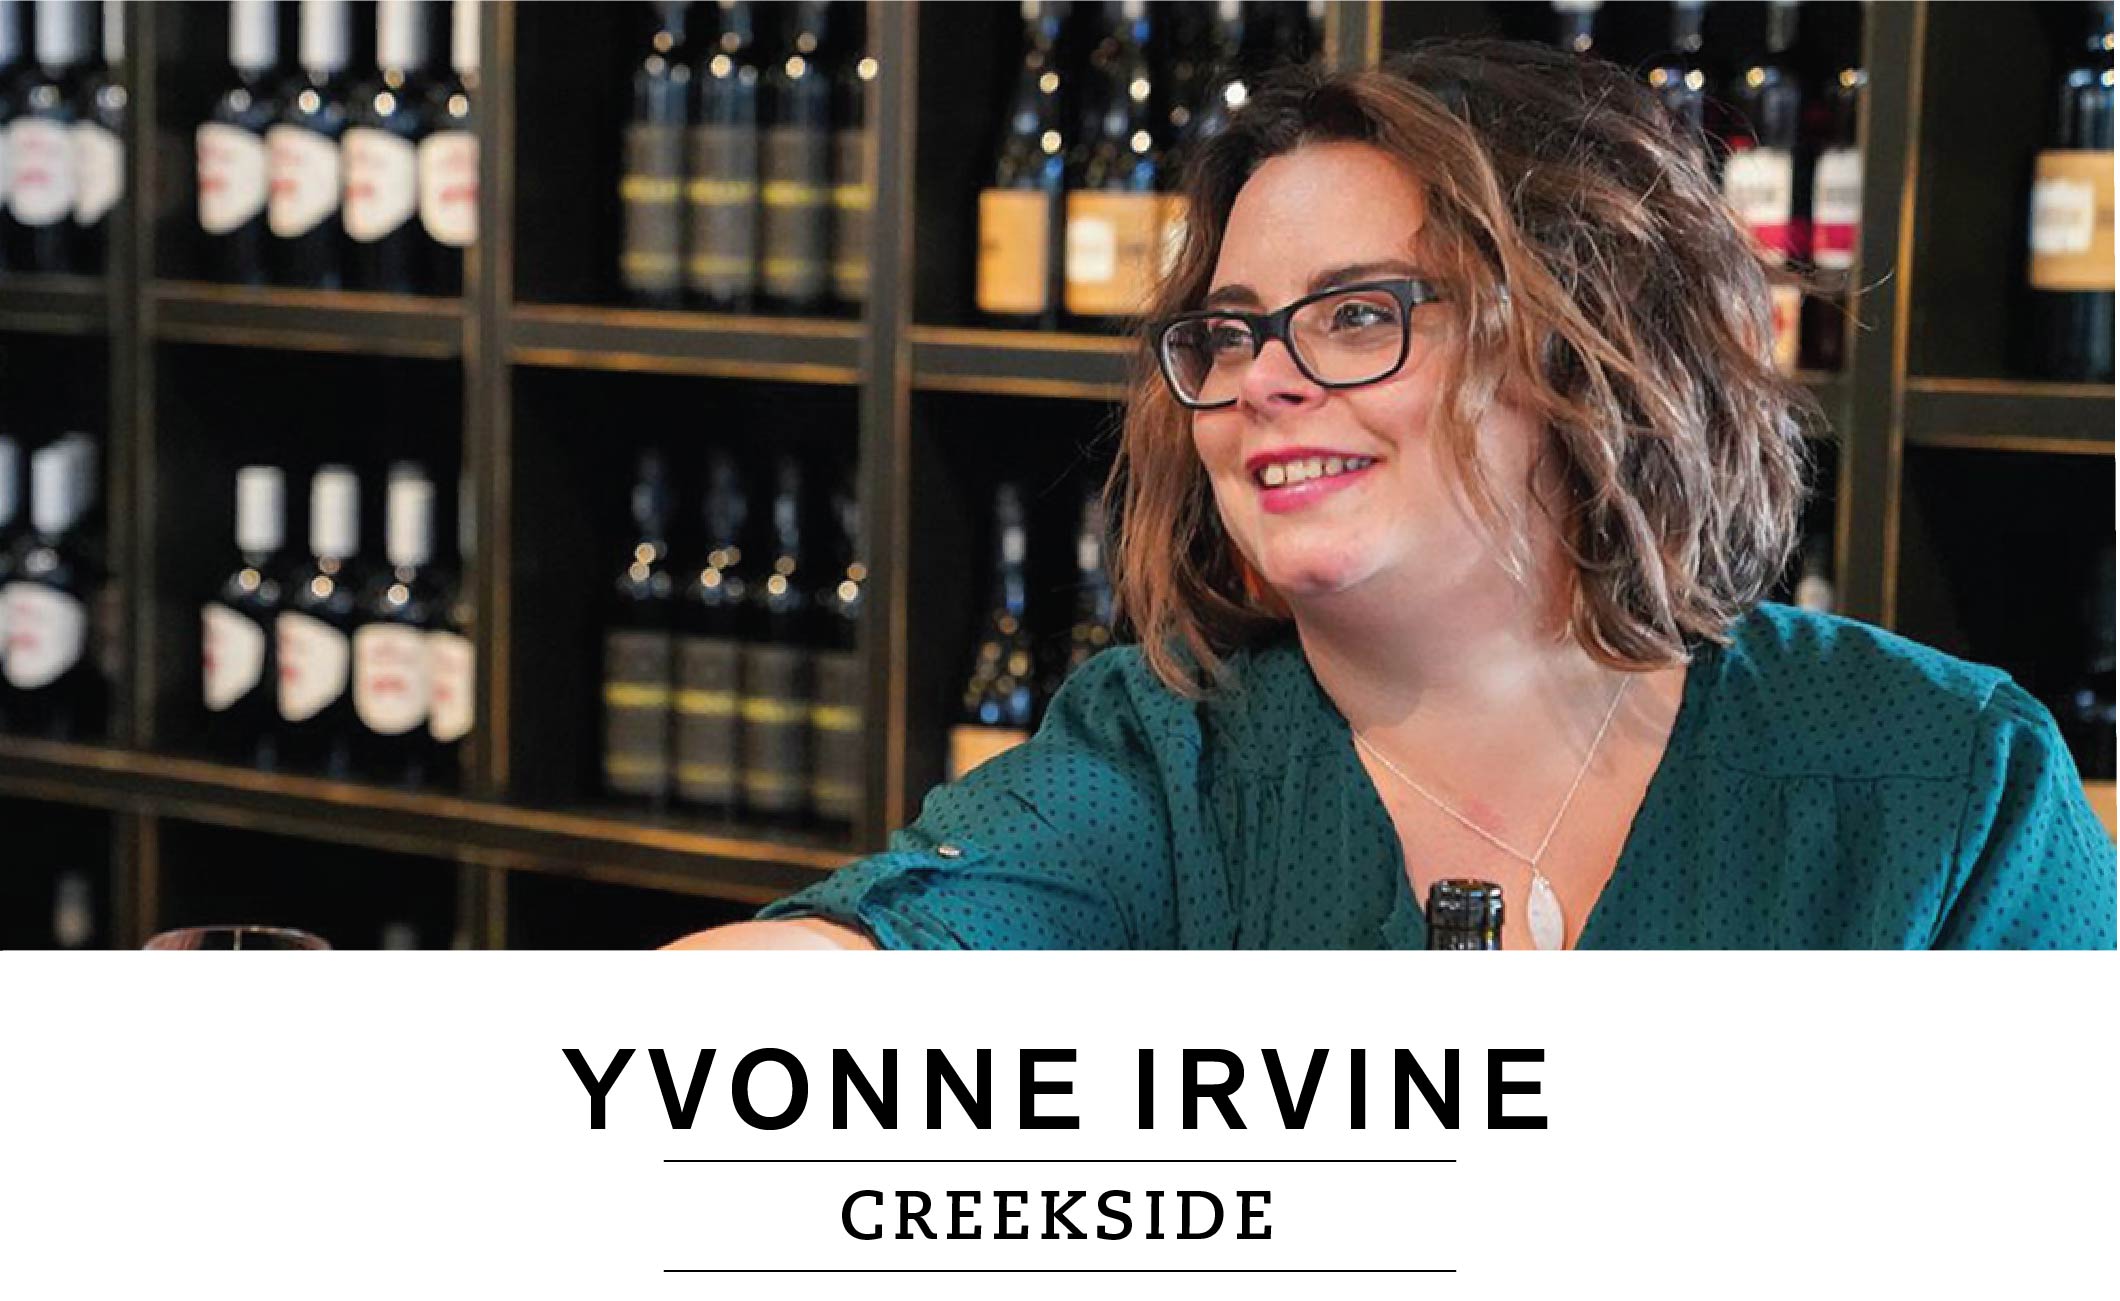 Creekside: Yvonne Irvine